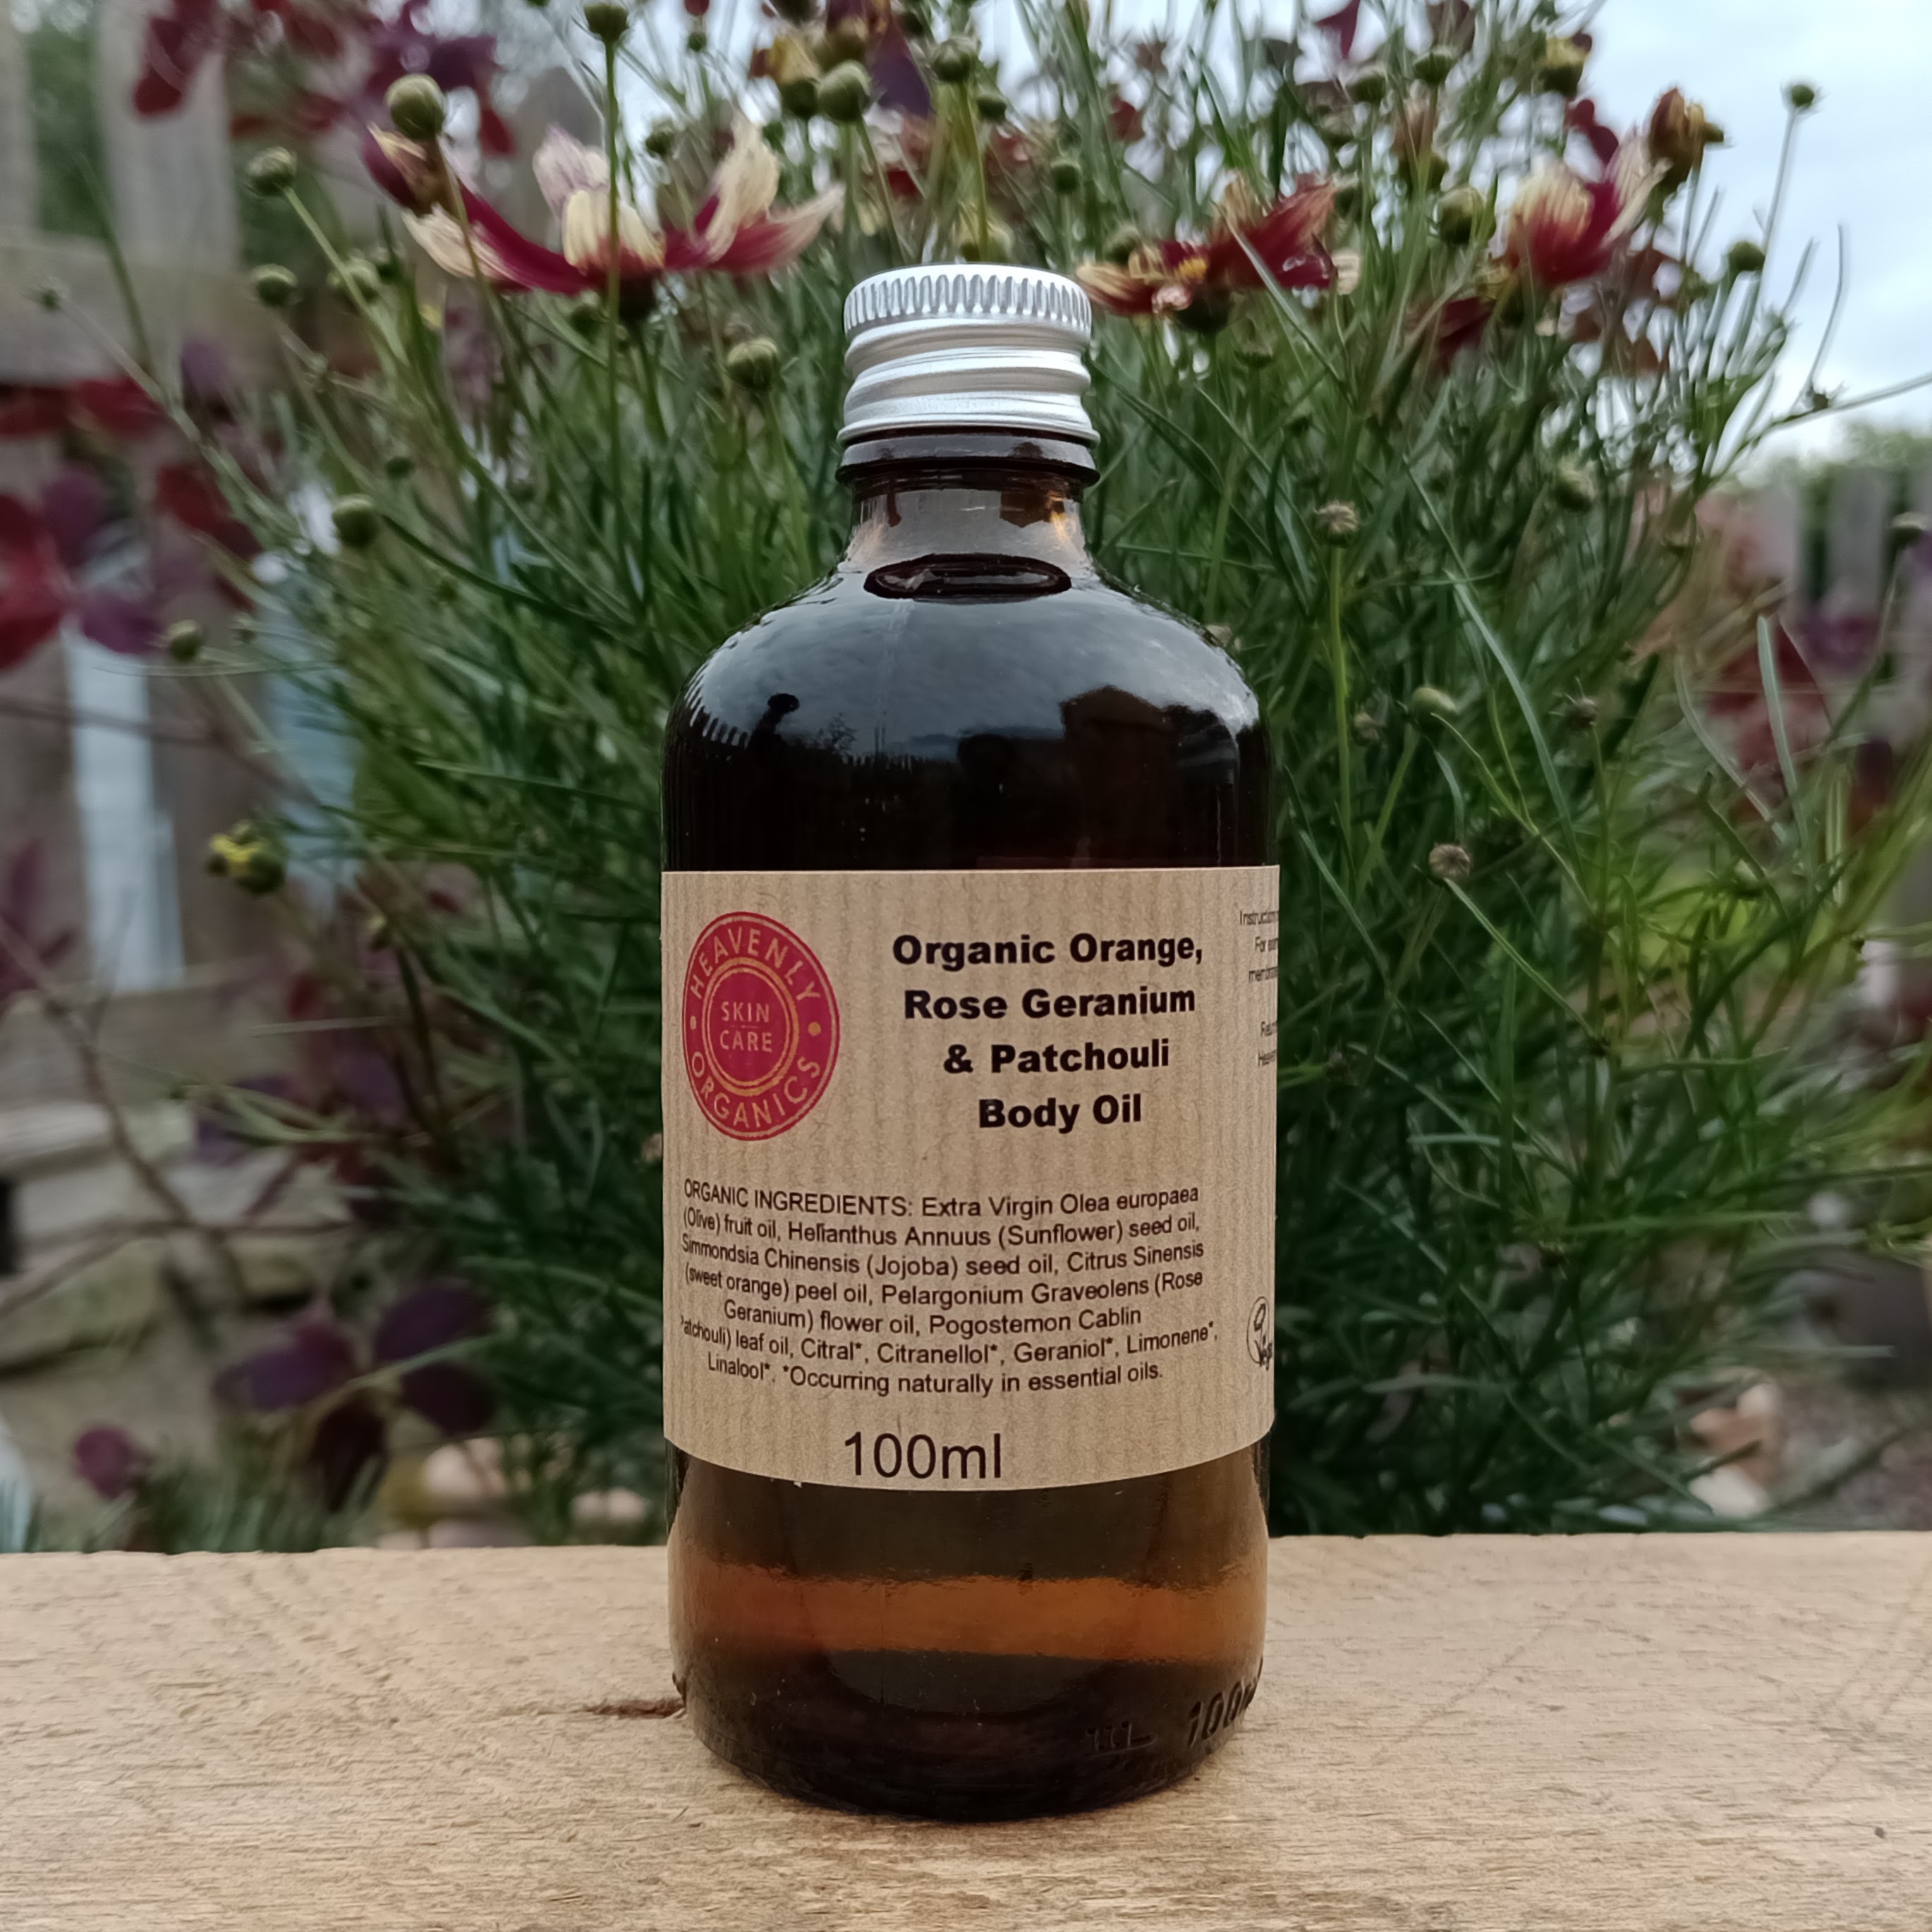 Organic Orange, Rose Geranium & Patchouli Body Oil